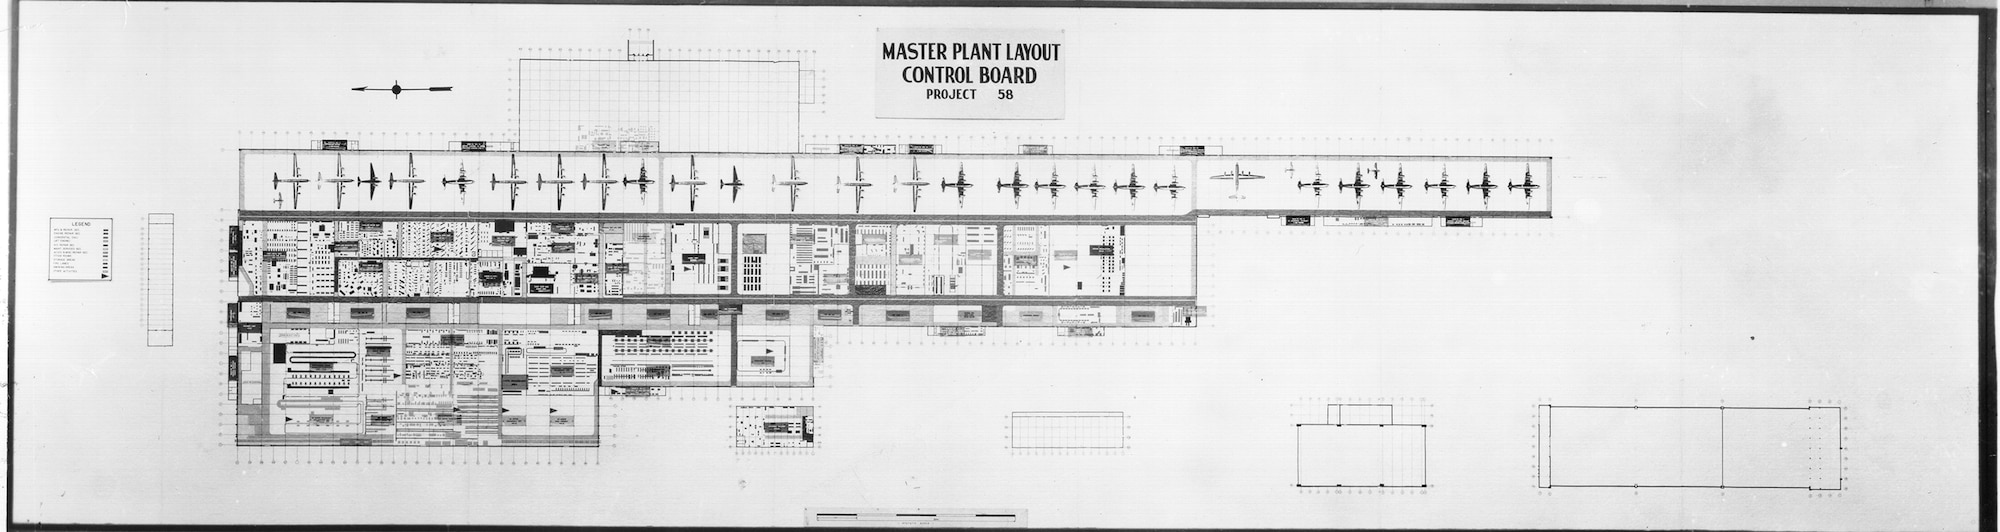 Bldg. 3001 floor plan in the 1940s.